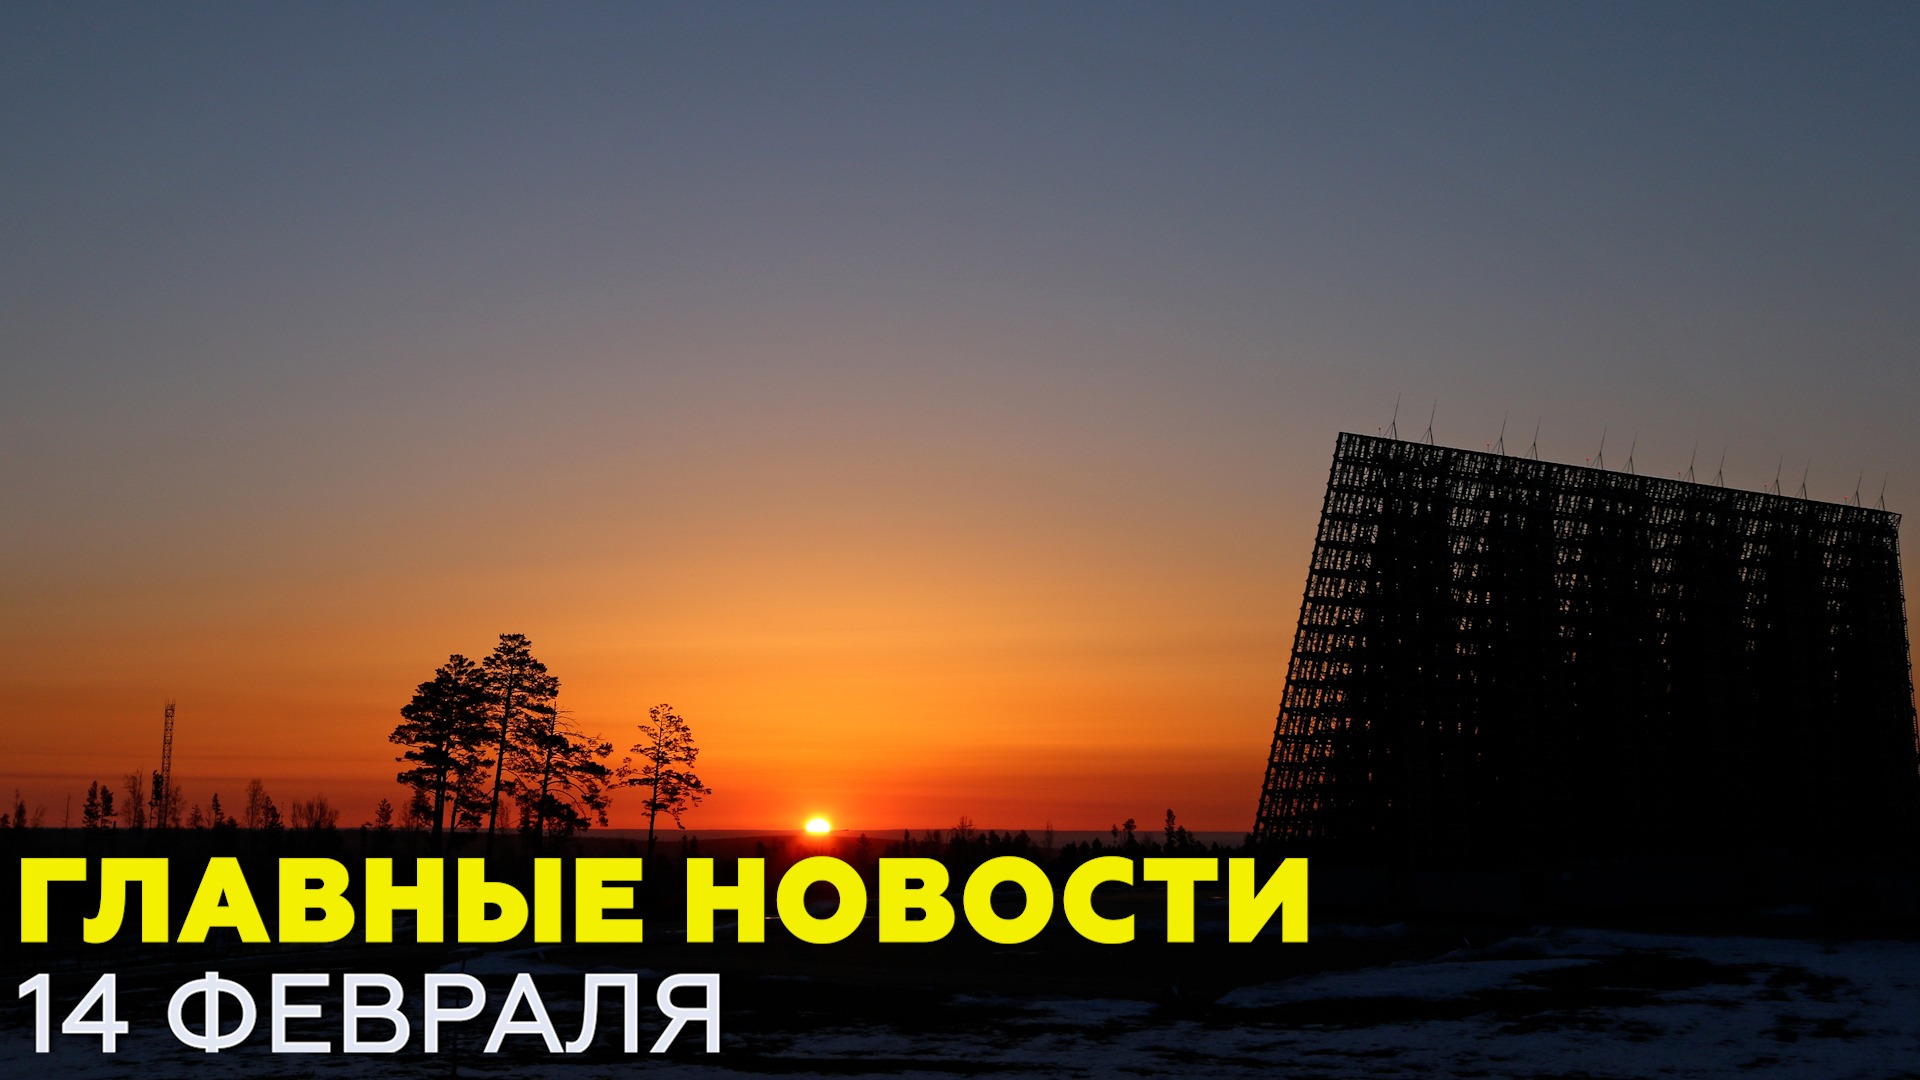 Новости дня 14 февраля: Путин о Донбассе, землетрясение в Японии — новости RT на русском